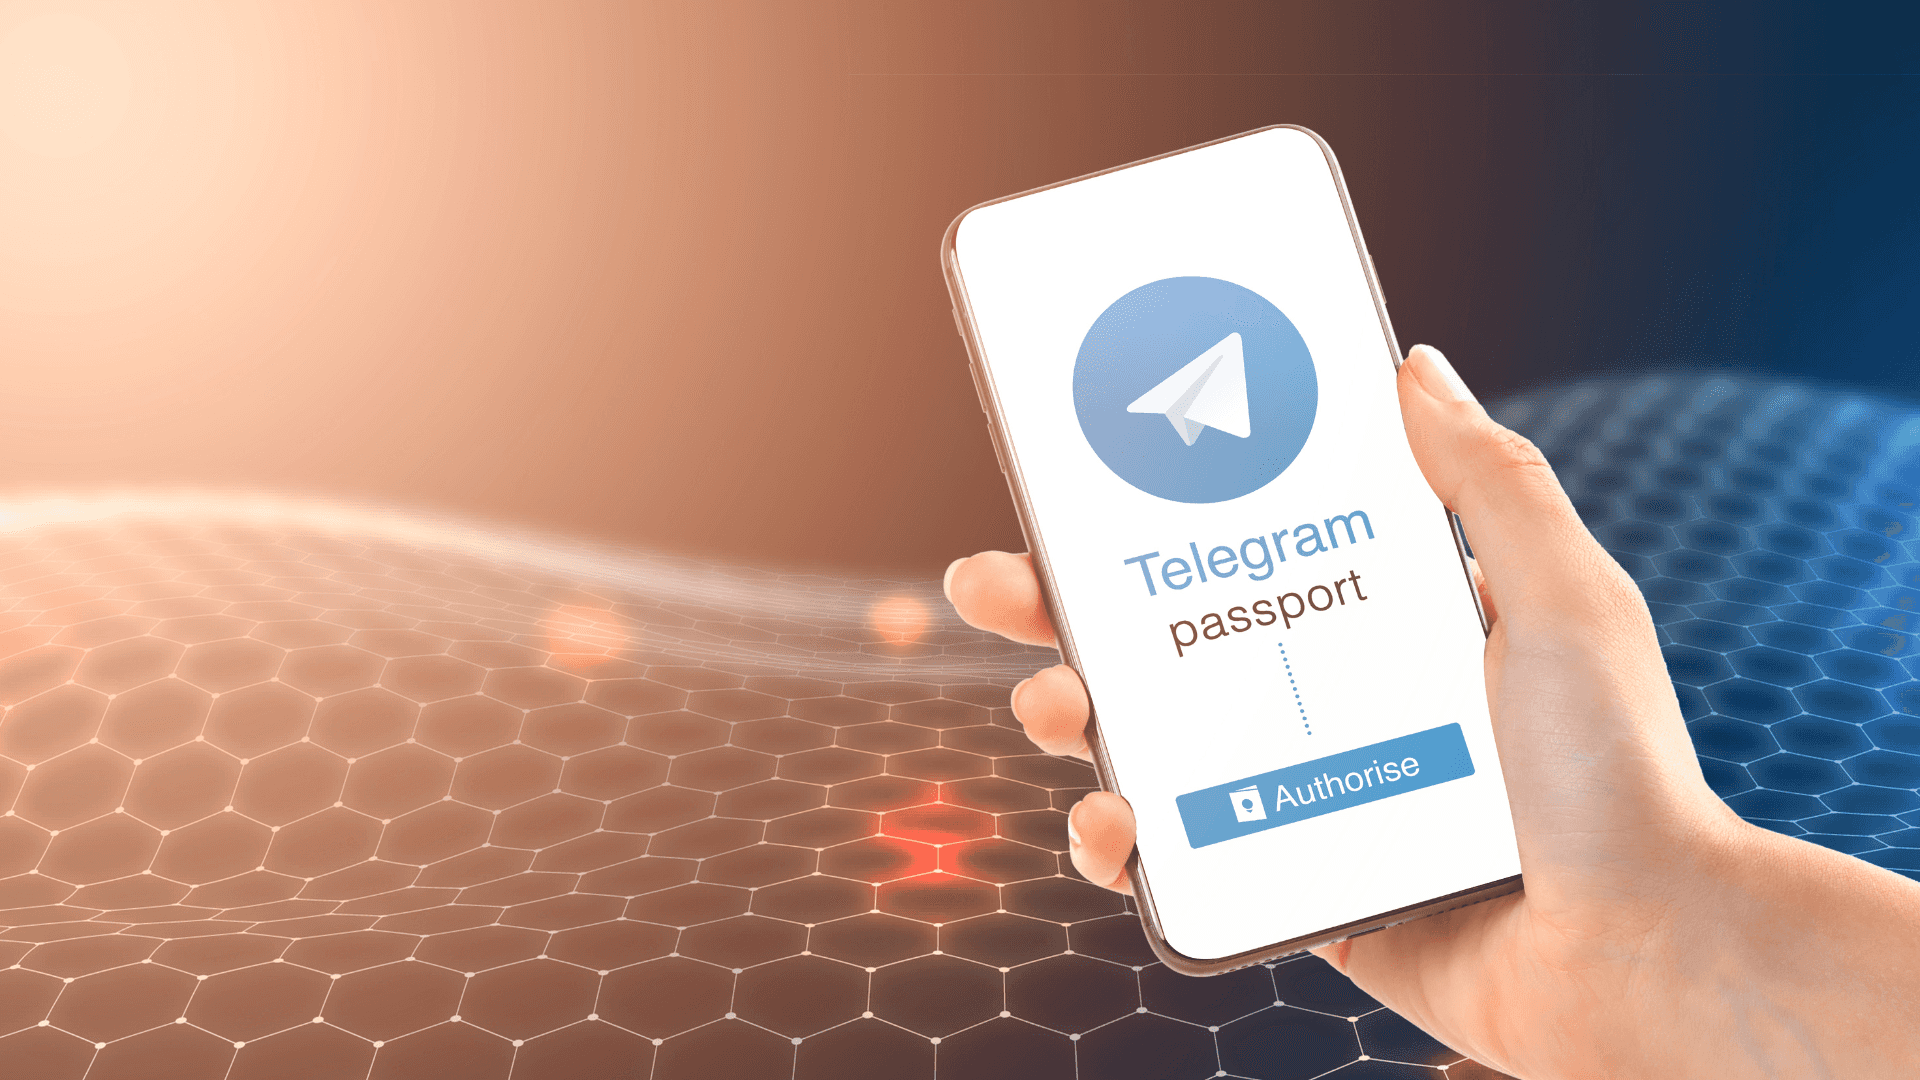 Enhand Som Håller En Smartphone Med En Telegram-app På Den